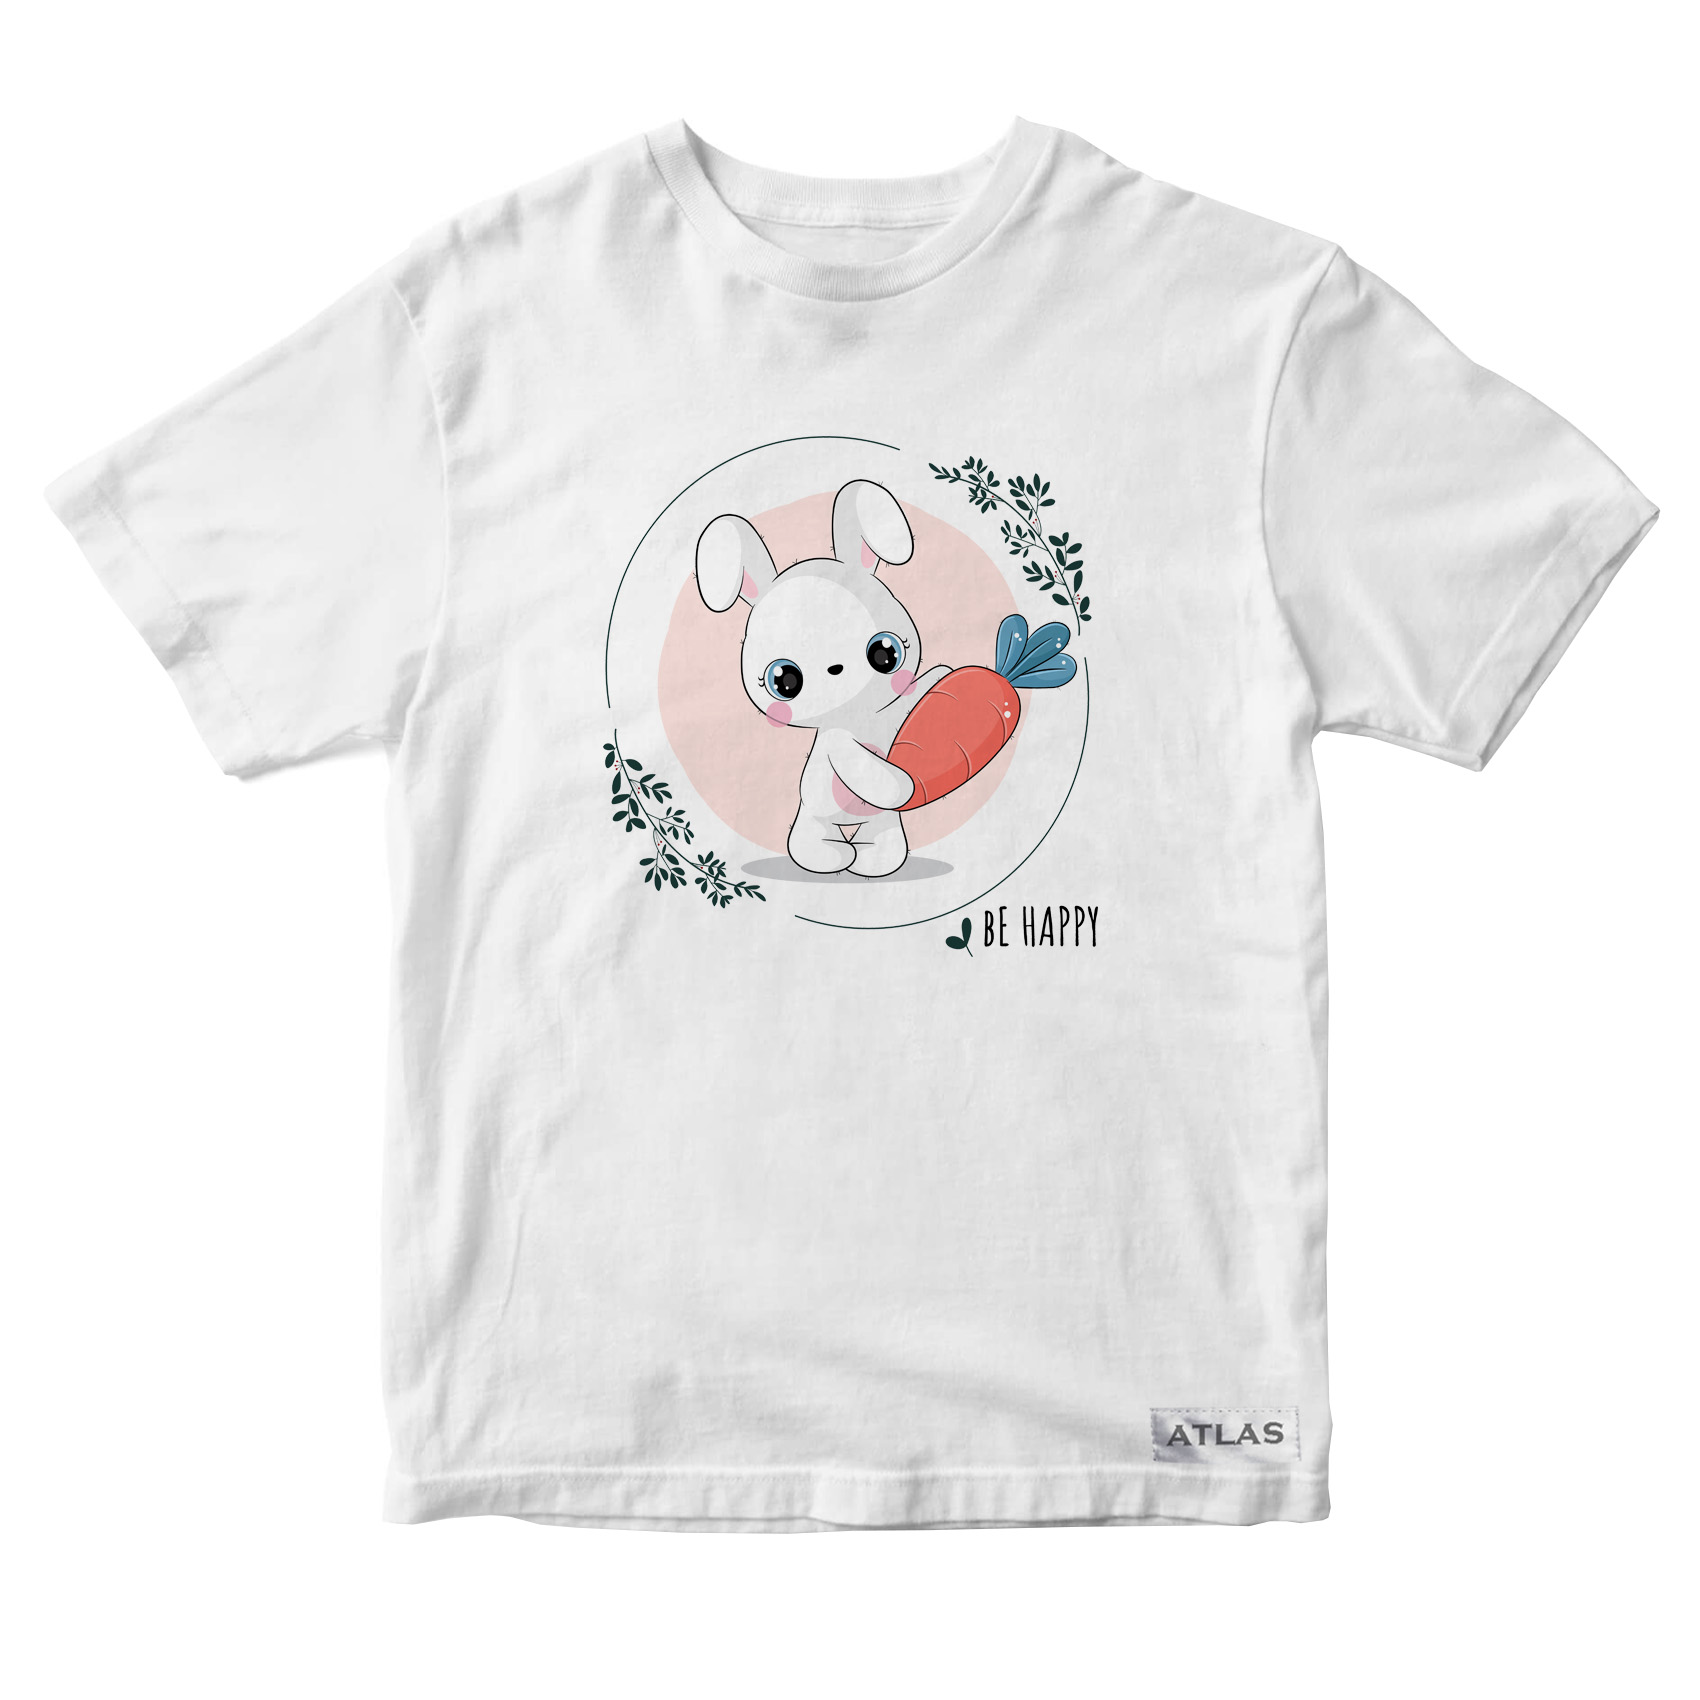 تی شرت آستین کوتاه دخترانه مدل خرگوش کد SH006 رنگ سفید